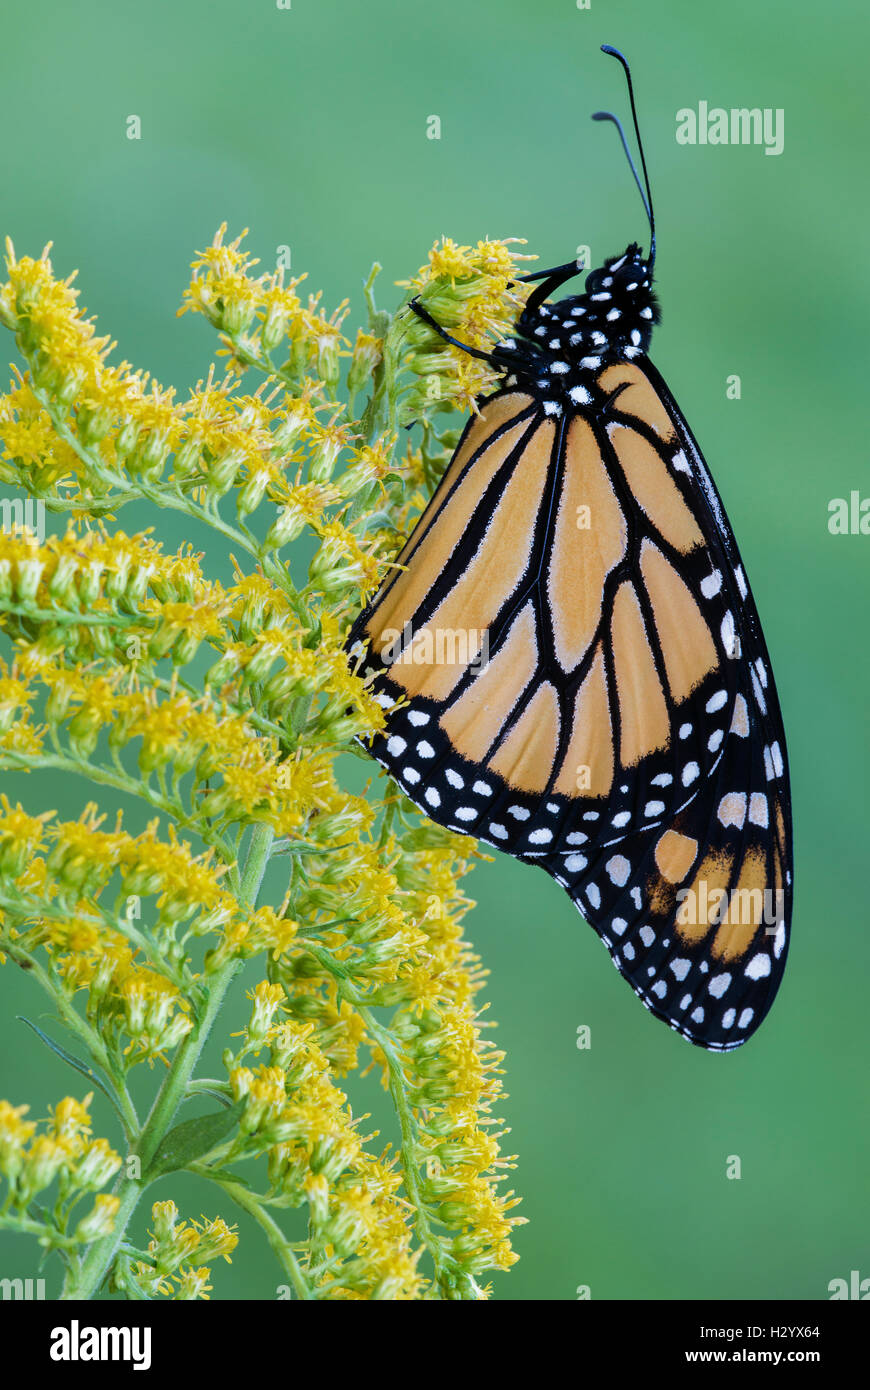 Farfalla monarca (Danaus plexippus) su oro (Solidago sps), fine estate, inizio autunno, E STATI UNITI D'AMERICA, da saltare Moody/Dembinsky Foto Assoc Foto Stock